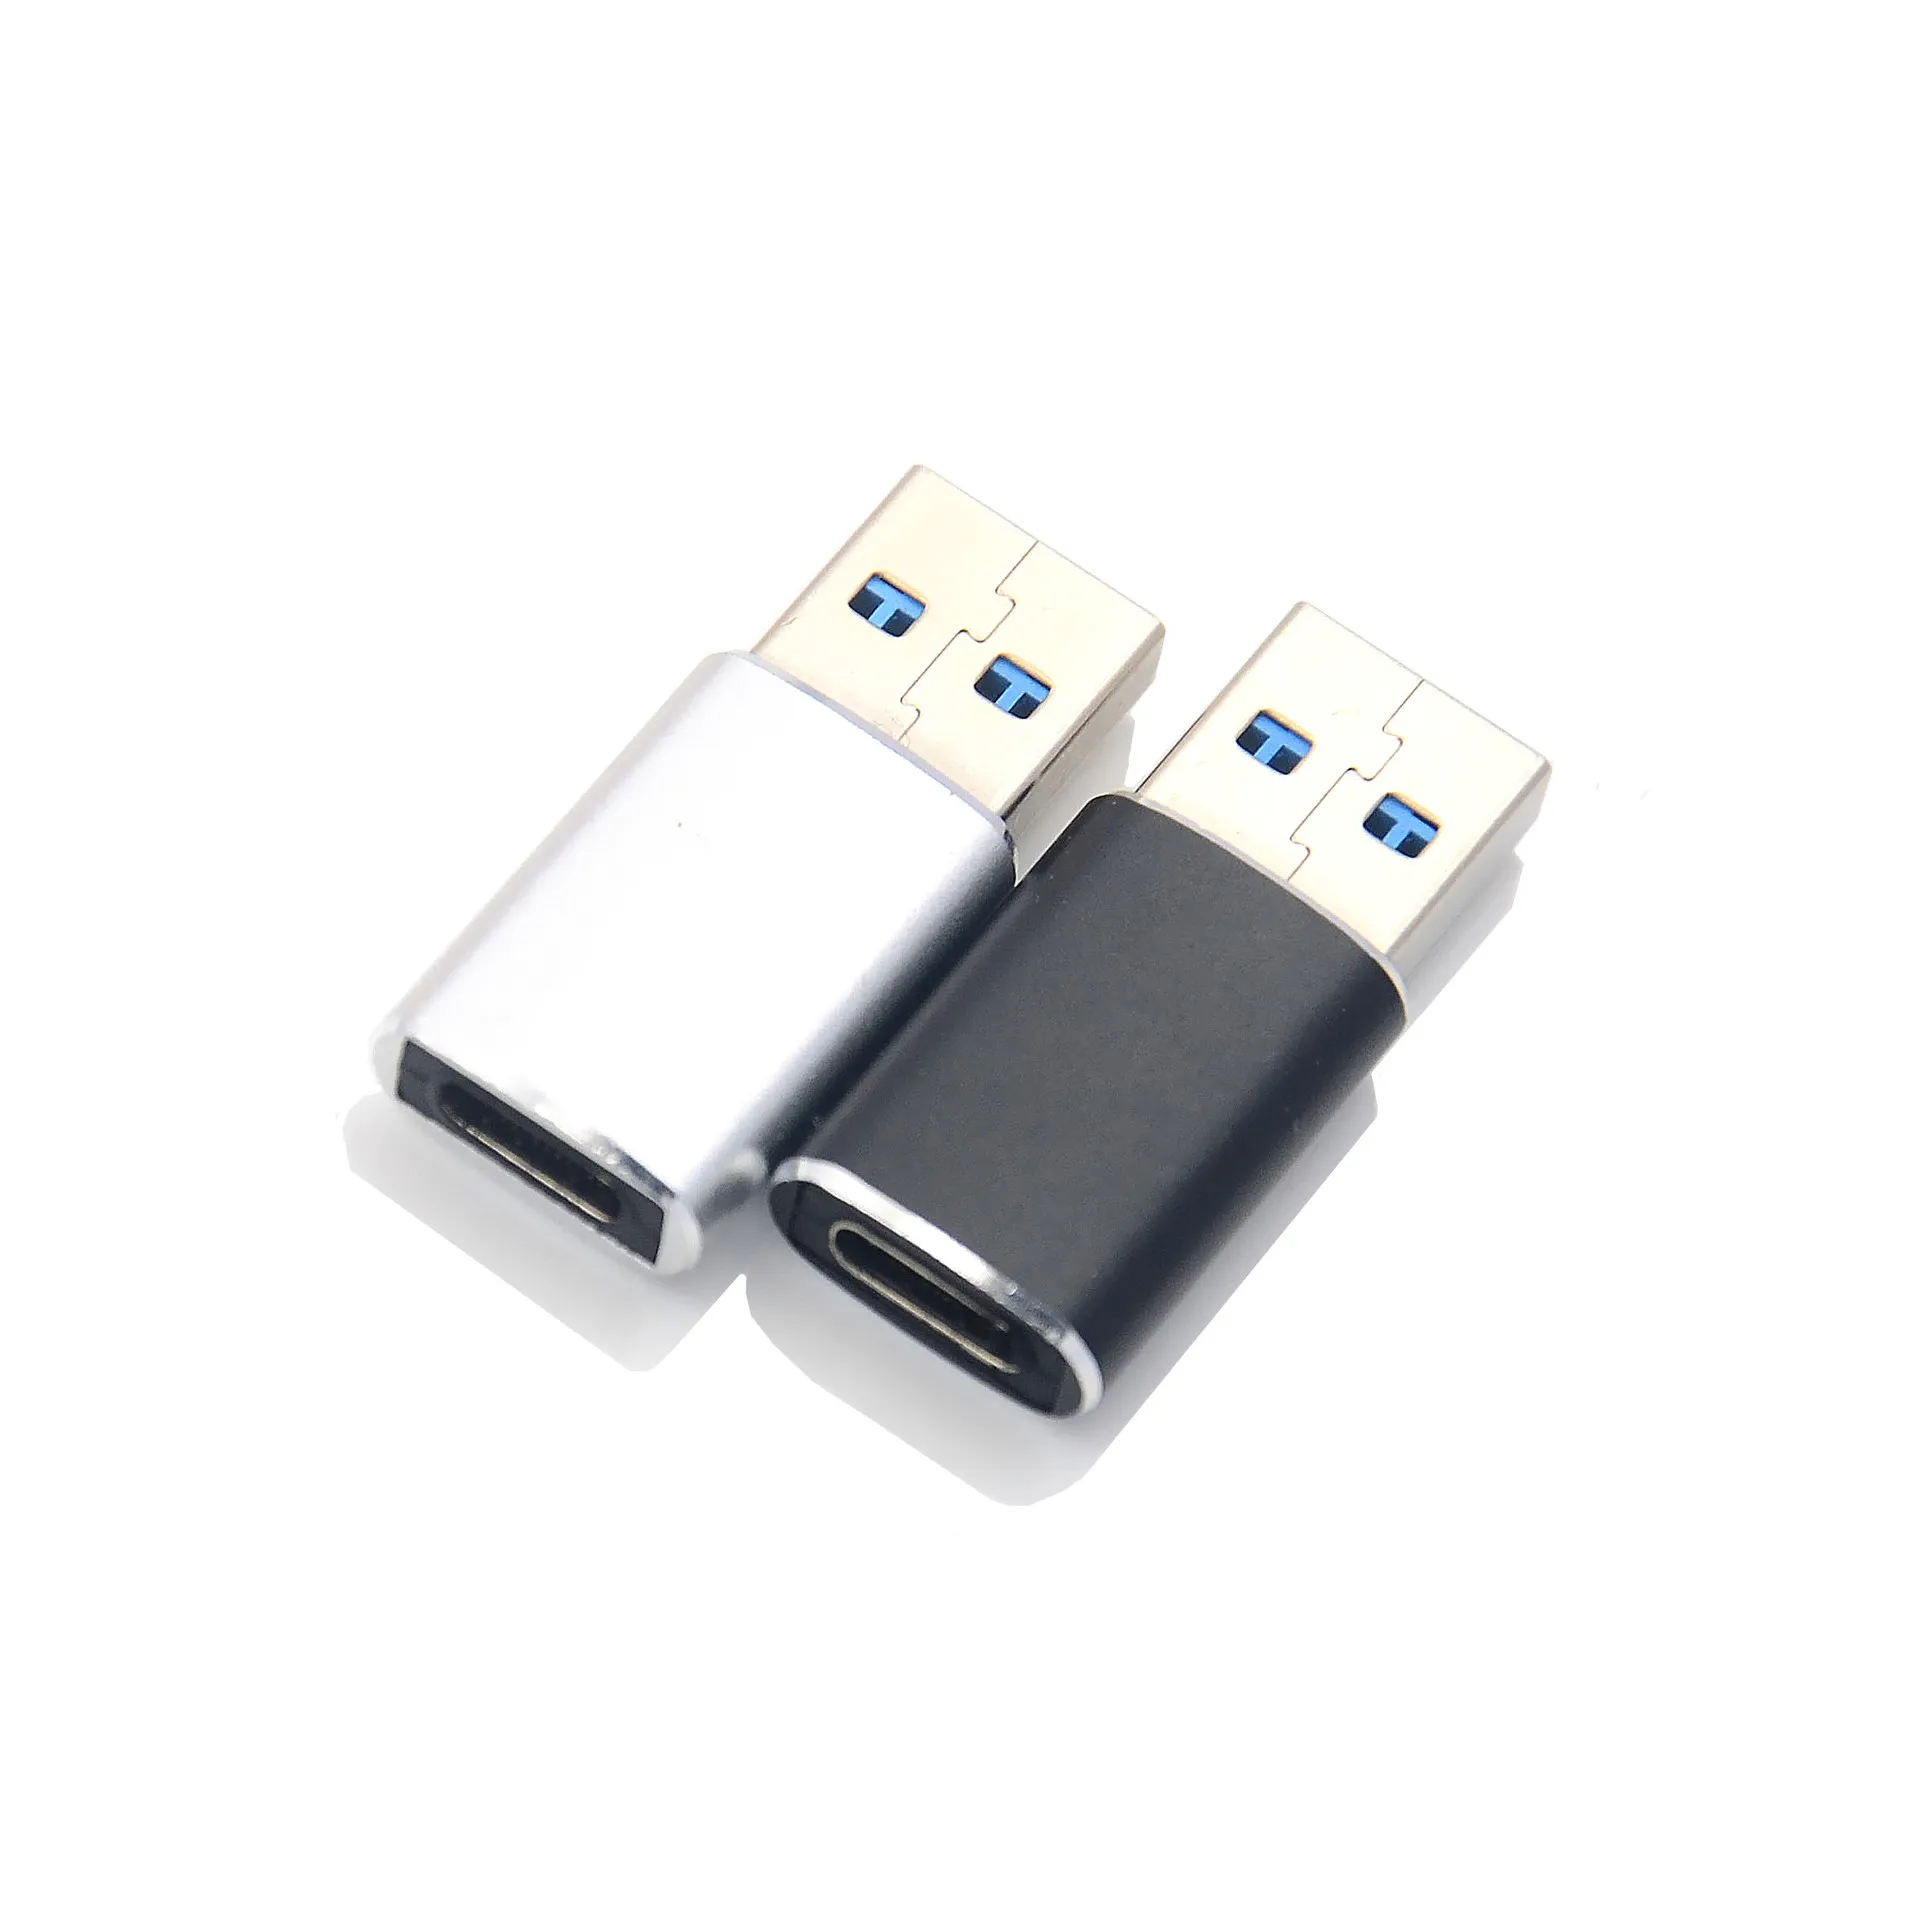 Adaptateur USB C vers USB adapté côte à côte Type C mâle vers USB C 3.0 femelle Adaptateur compatible avec téléphone tablette et appareils Thunderbolt 4/3 argent noir